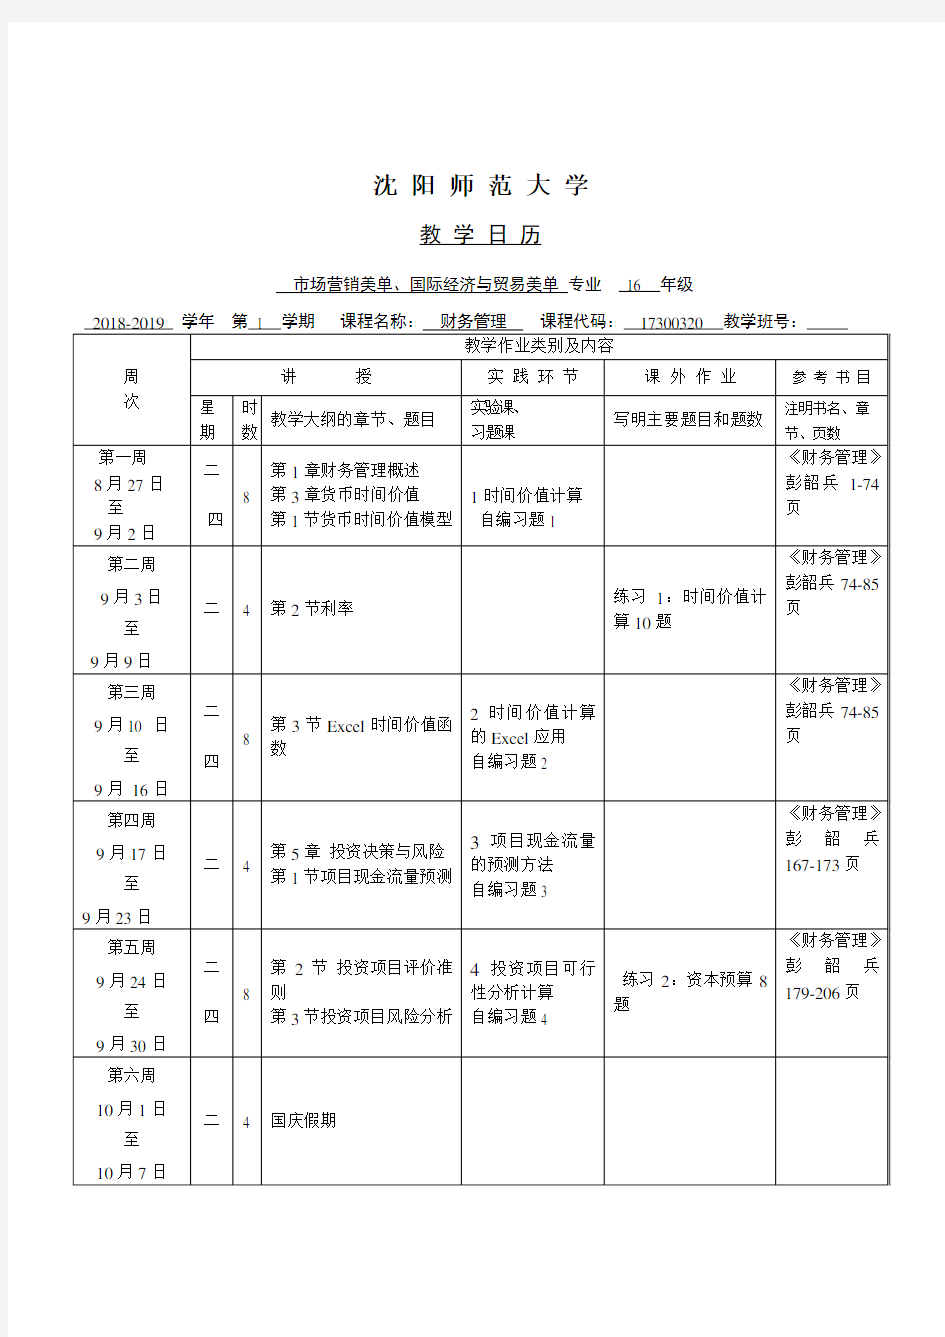 李文泽 财务管理教学日历2018-2019(1)